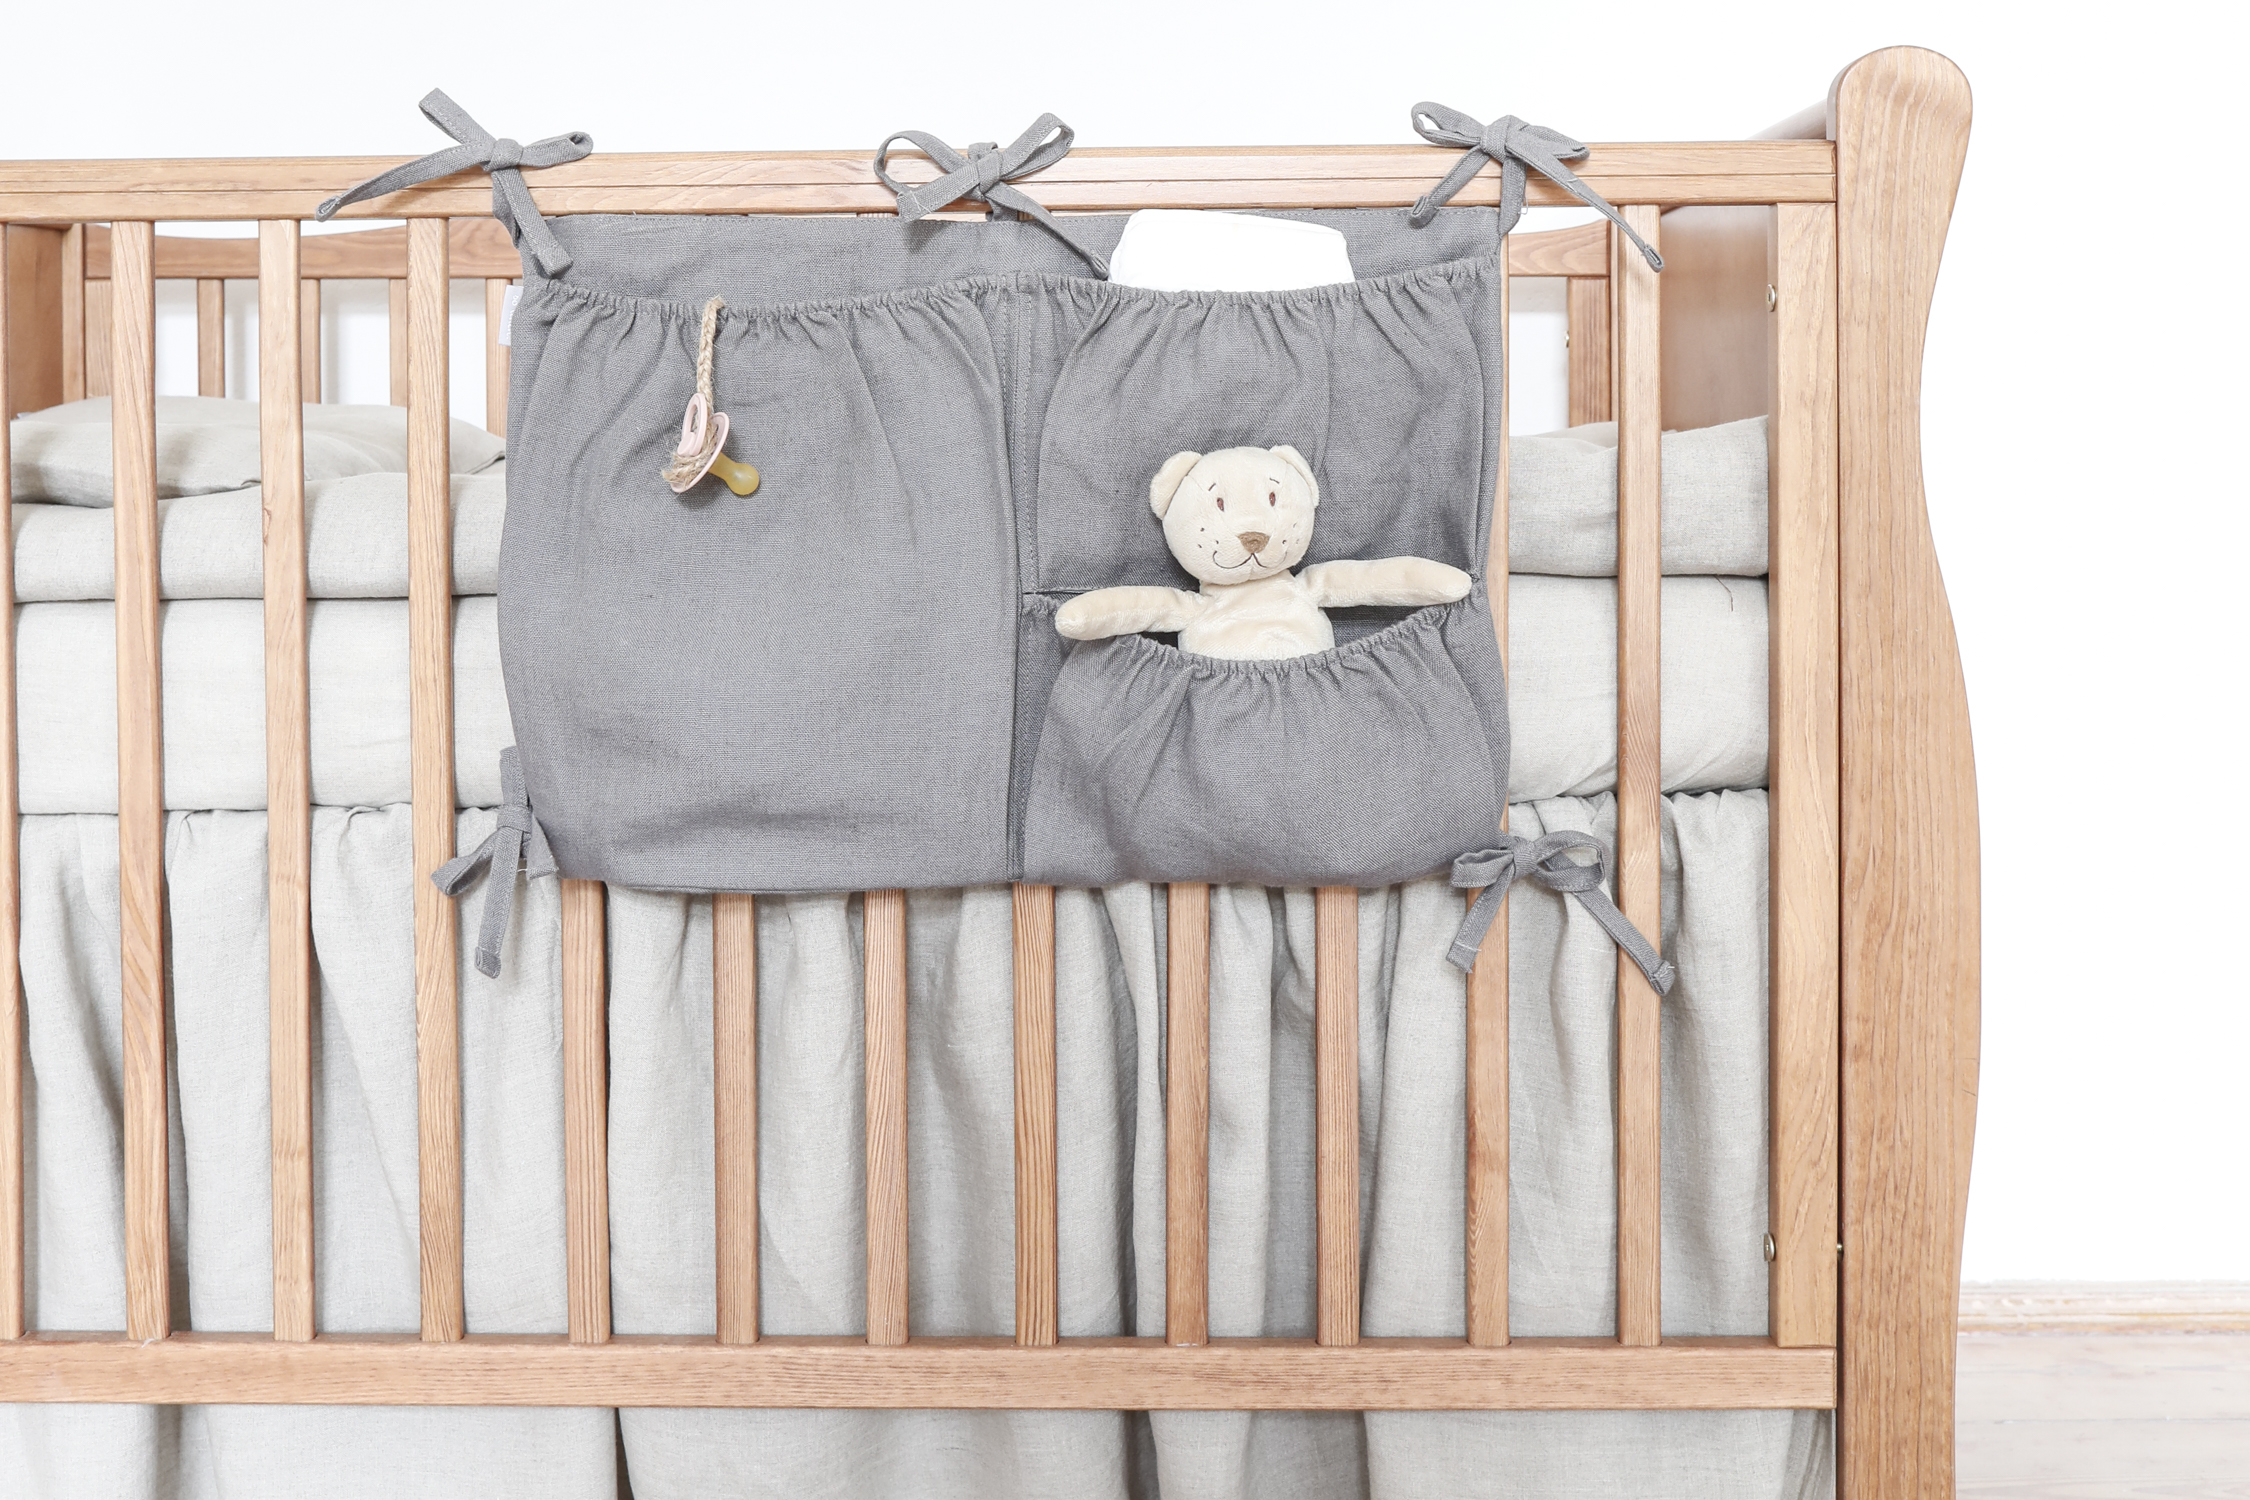 Gray crib organizer